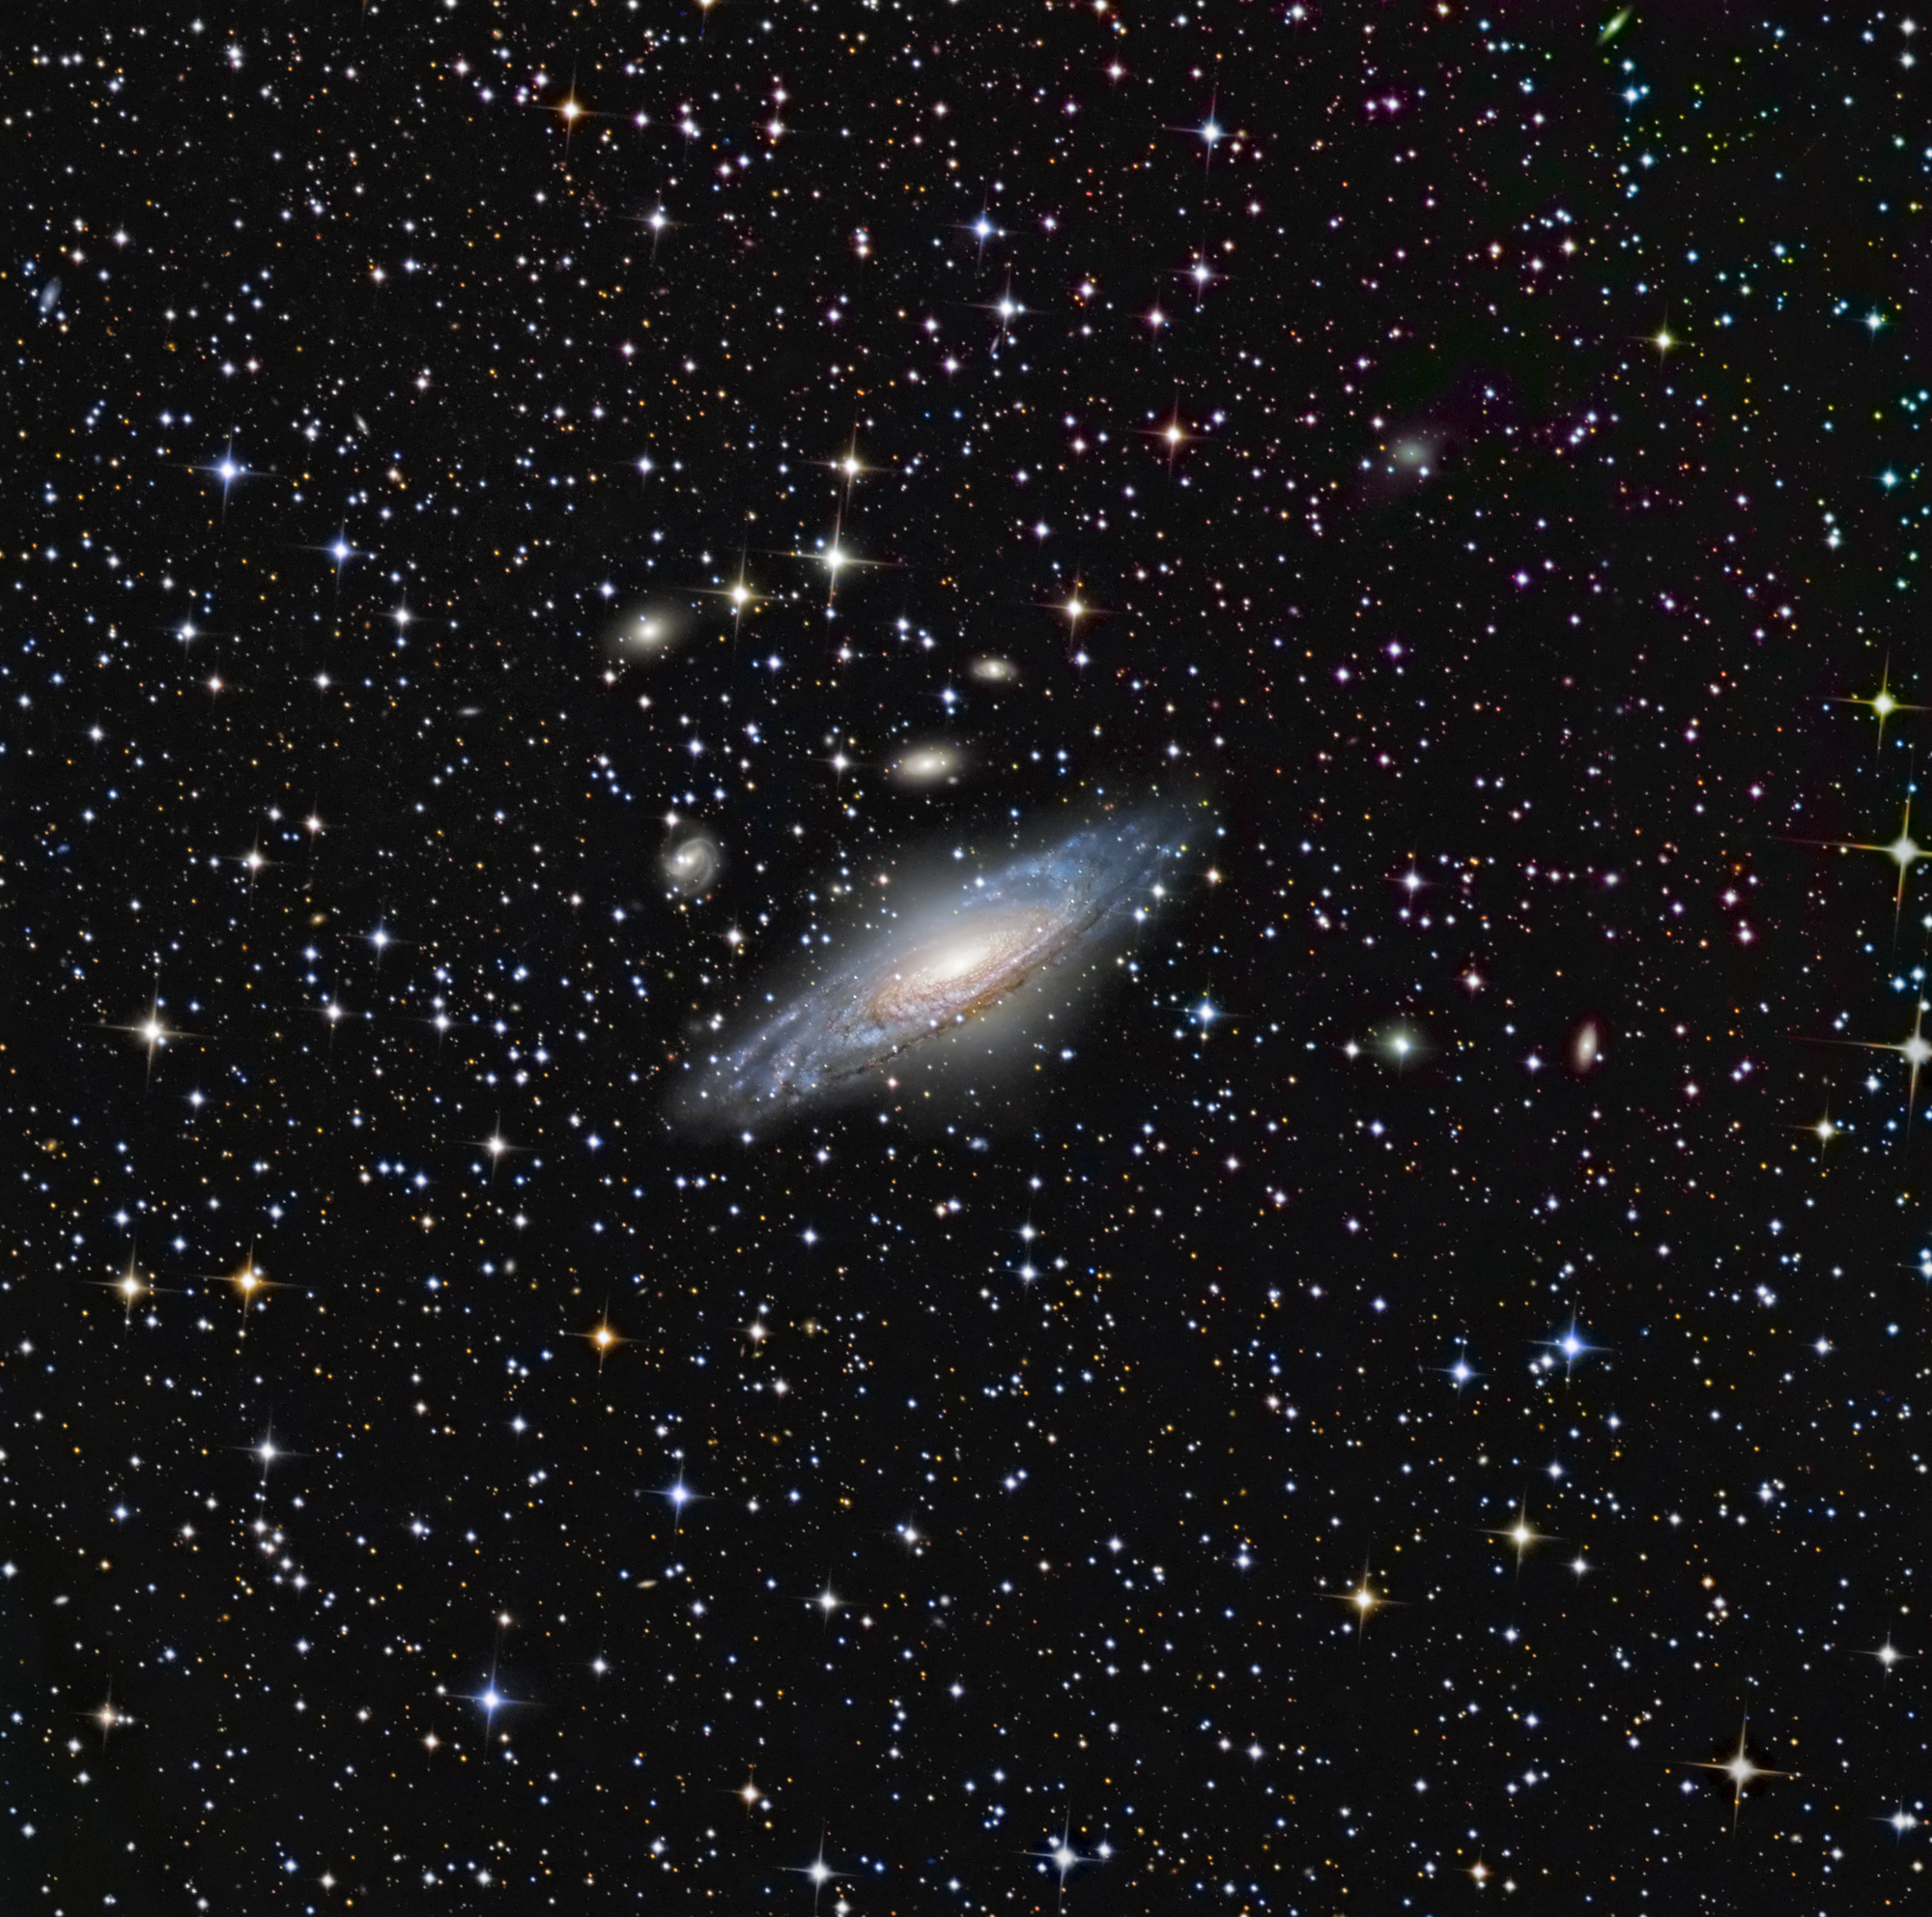 JAPOD dayframe_APOD: 2008 July 12 - NGC 7331 and Beyond